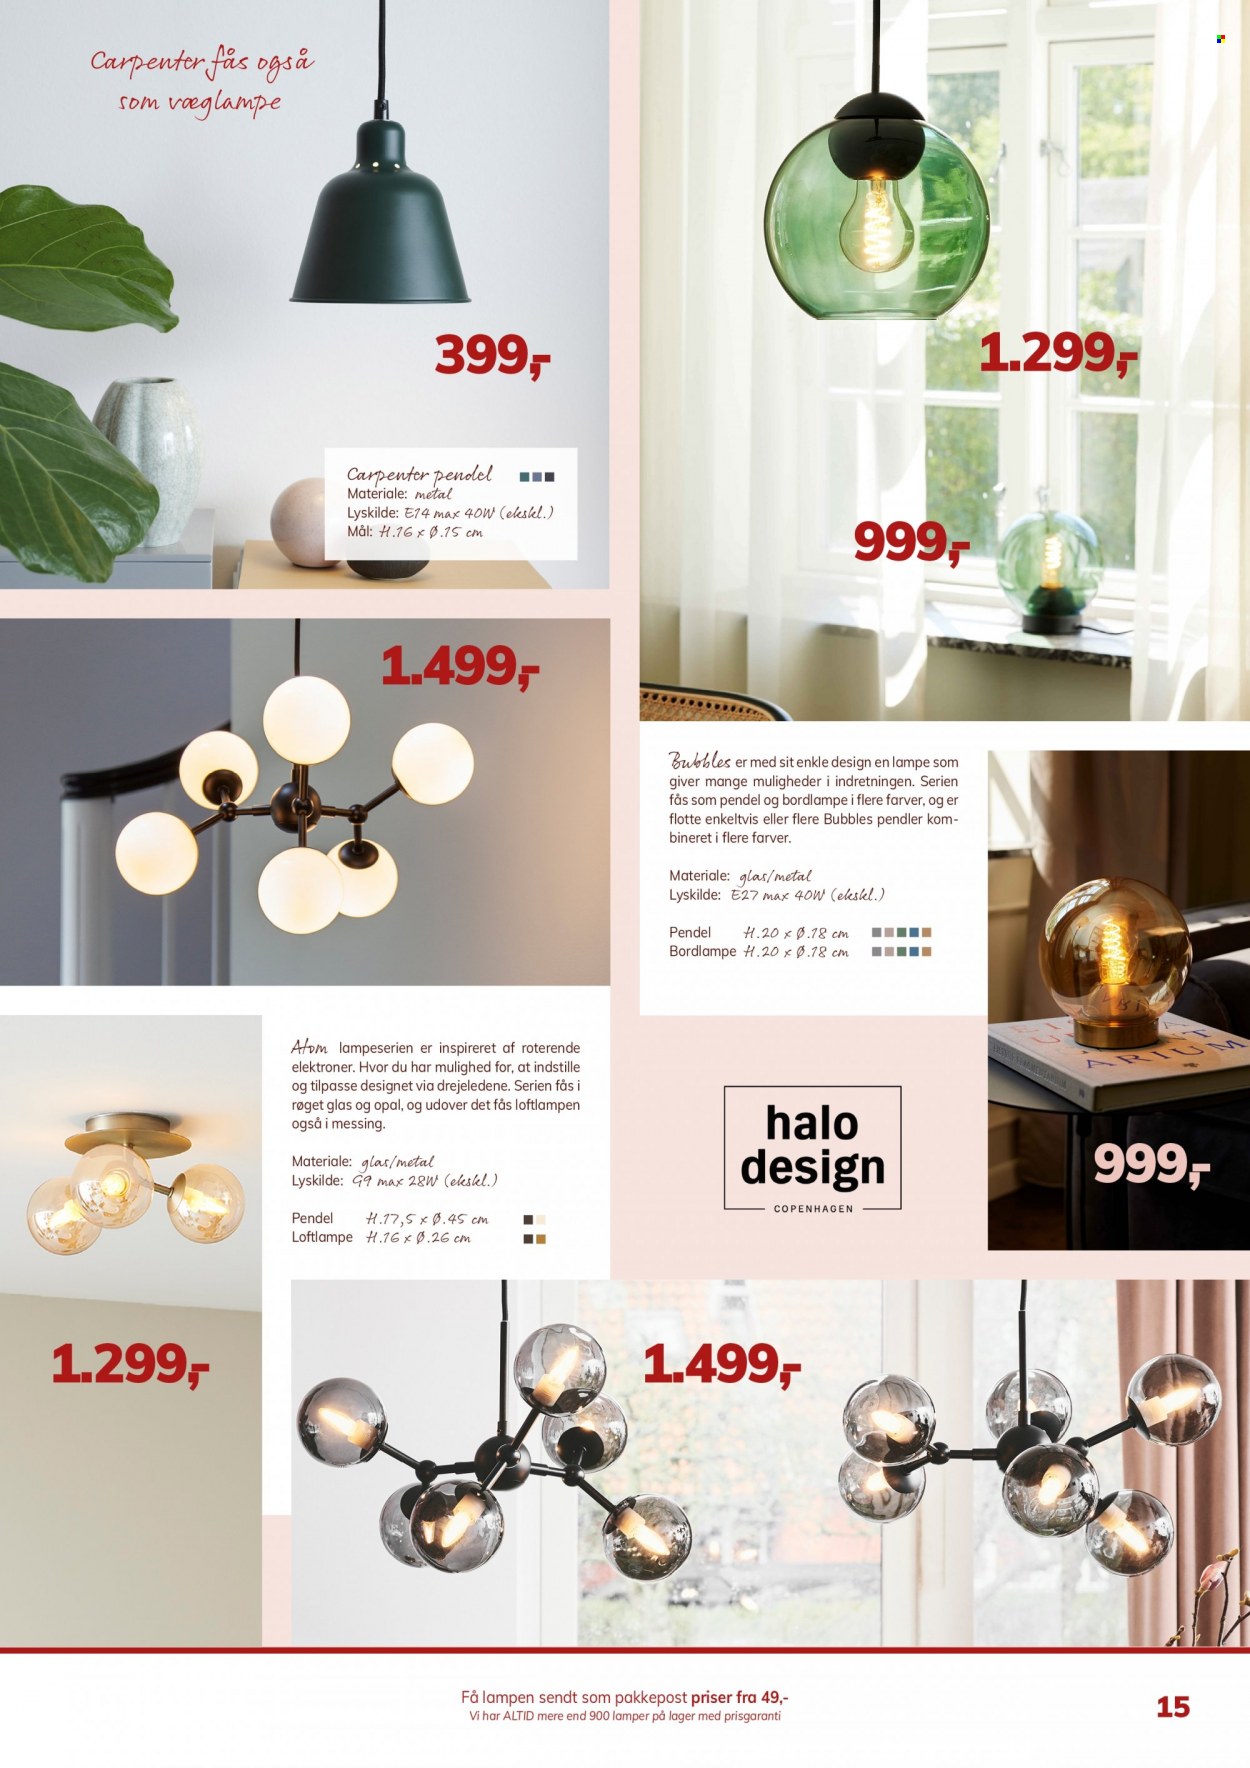 thumbnail - Daells Bolighus tilbud  - tilbudsprodukter - pendel, bordlampe, lampe, loftlampe. Side 15.